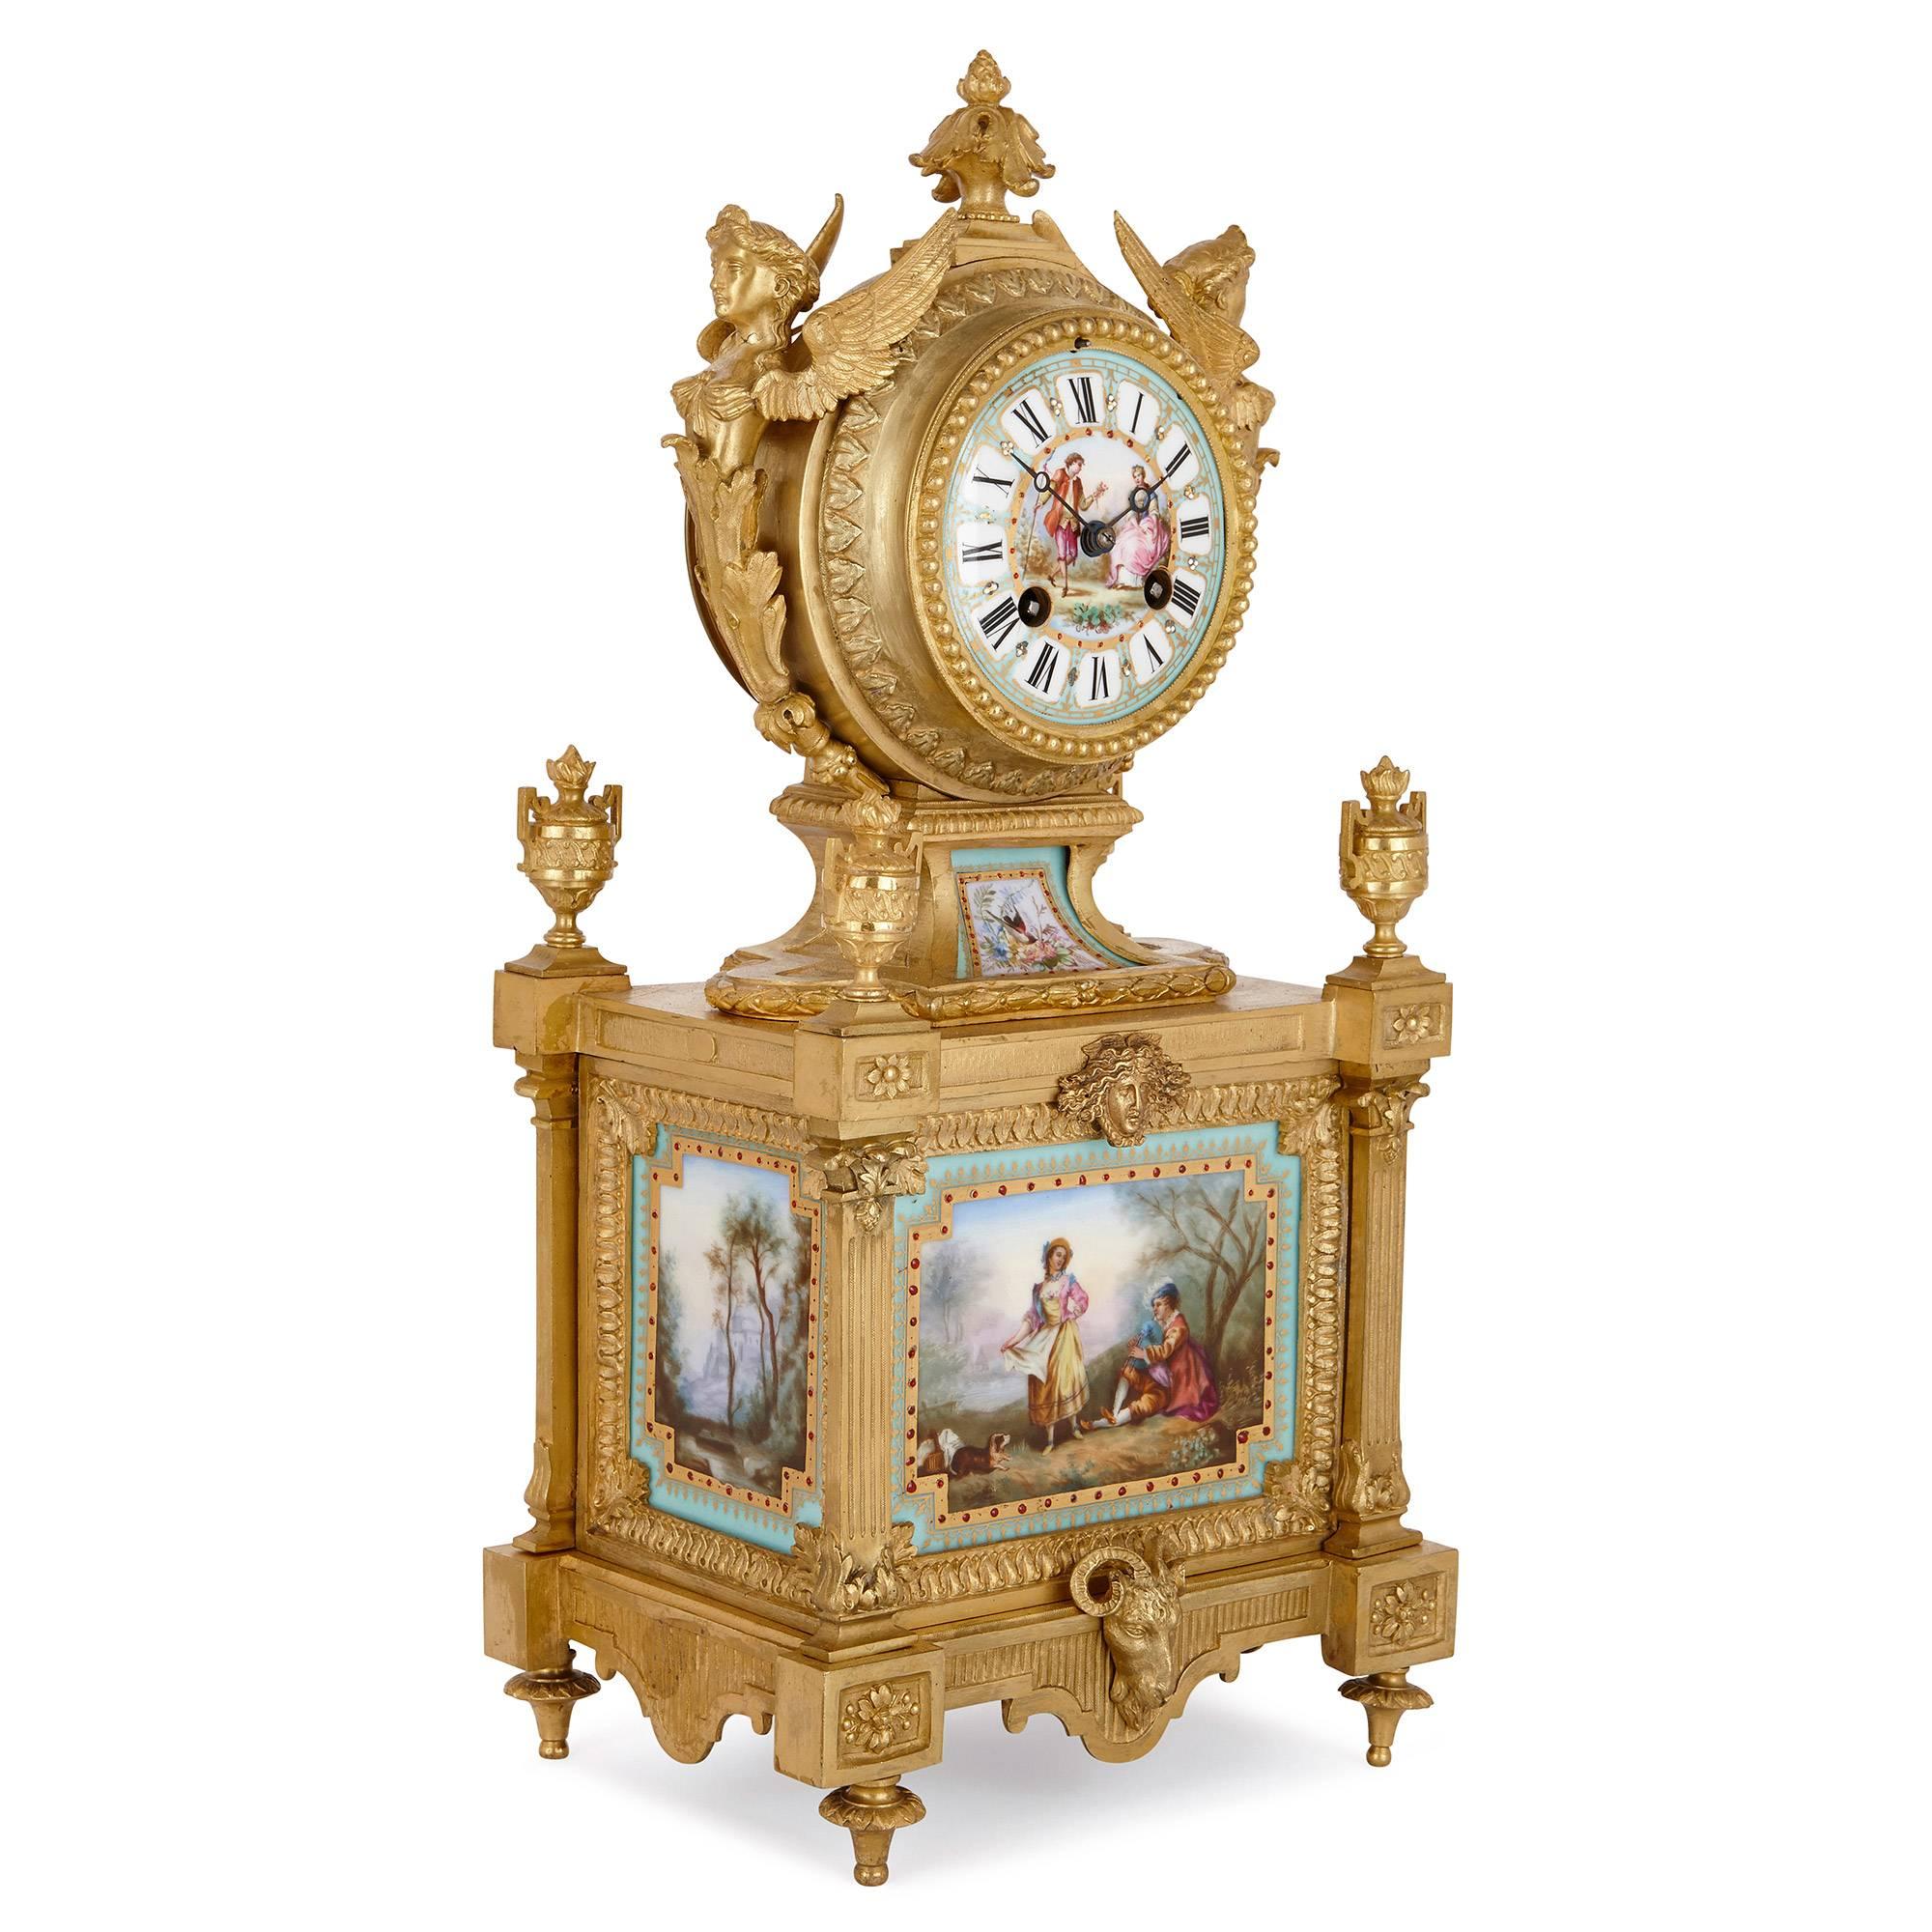 Diese schöne Kaminsimsuhr im neoklassischen Stil ist eine prächtige Ergänzung für einen großen Raum oder ein einzigartiges Geschenk für einen lieben Menschen. Die Uhr ist ein Werk von Ernest Royer, einem bedeutenden französischen Hersteller, der in